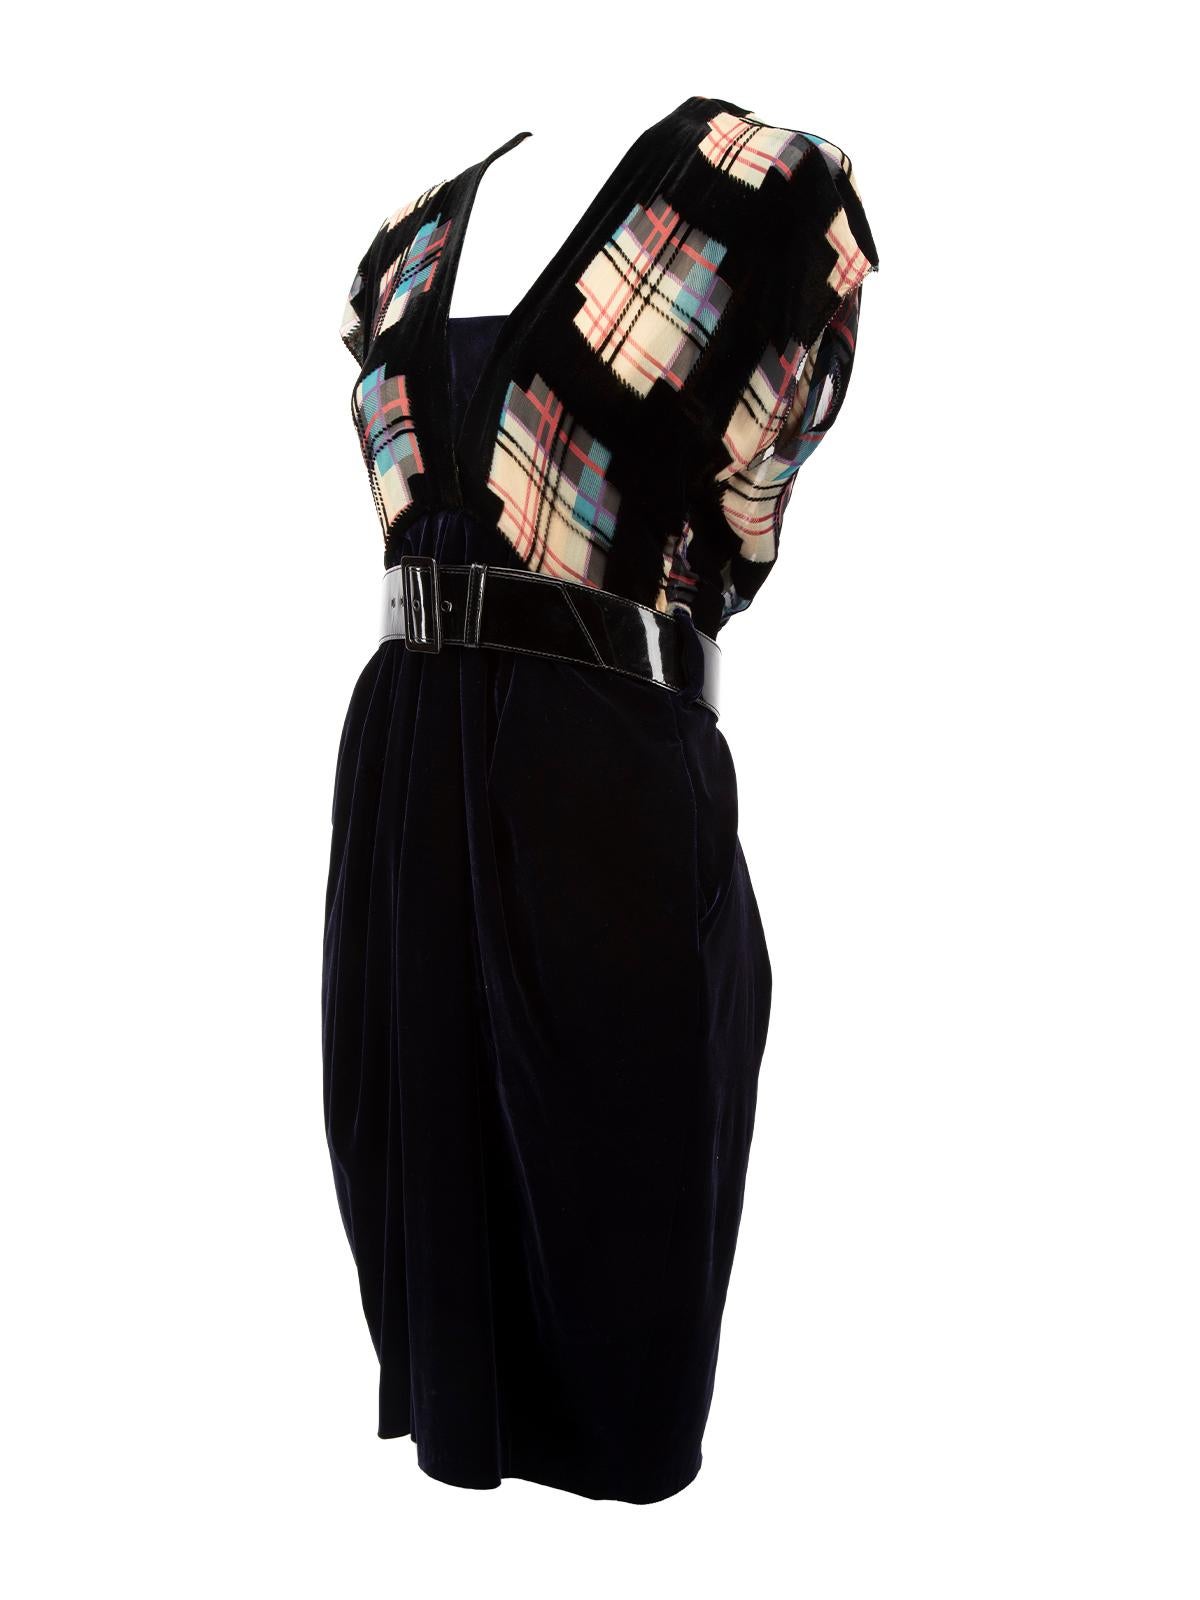 Pre-Loved Jean Paul Gaultier Women's Velvet Tartan Patterned Dress with Leather  1